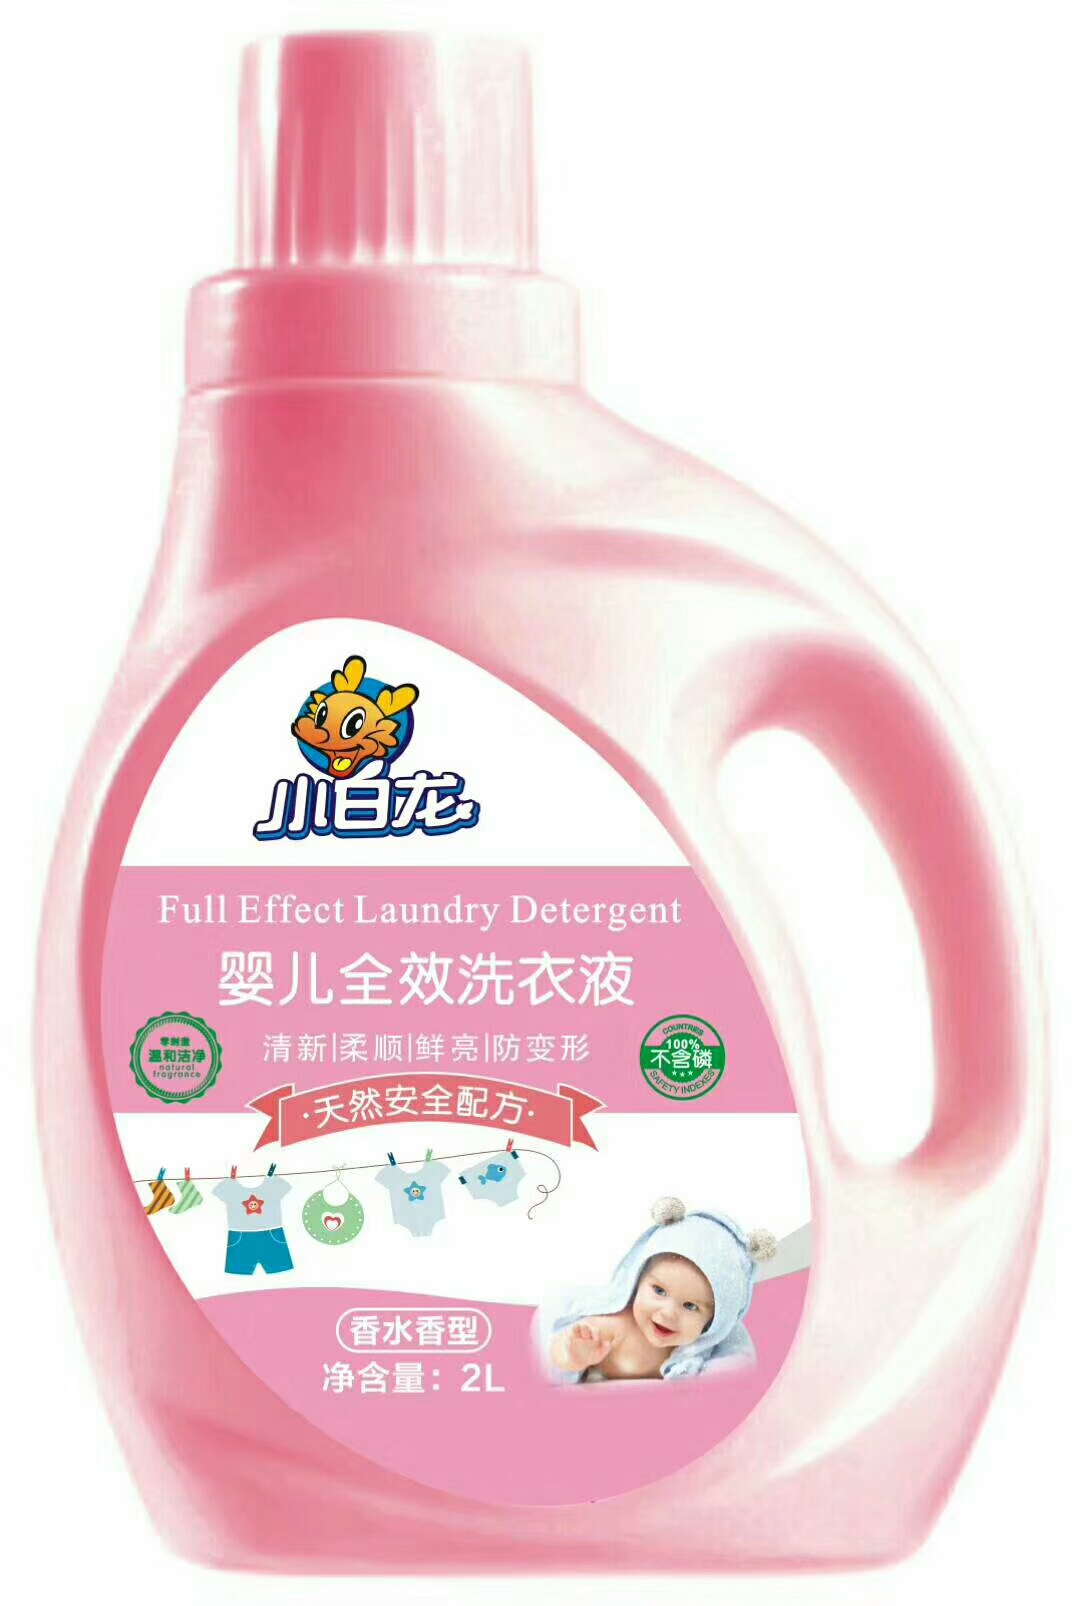 香水香型 酵素特浓缩皂粉 厂家直销 国货品牌 小白龙 洗衣粉2